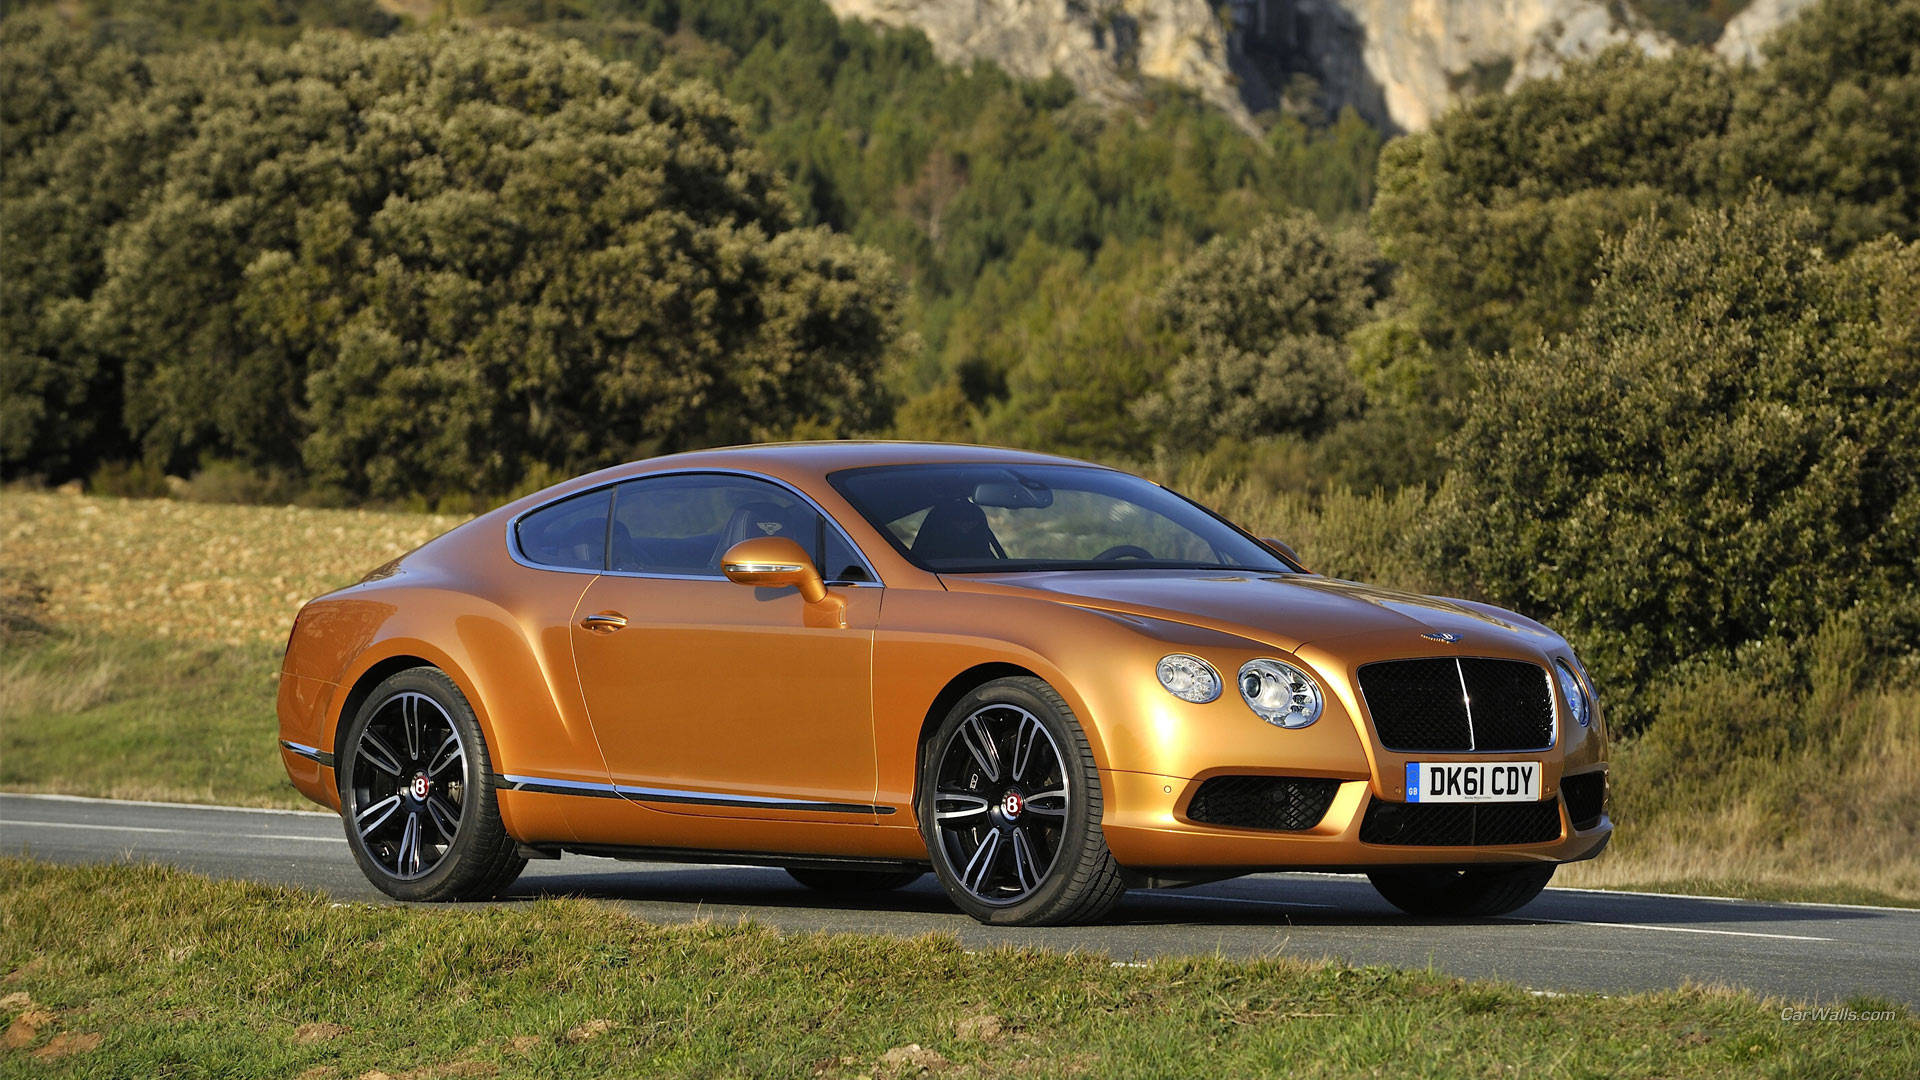 Orangefarbener Continental Gt Bentley Hd Wallpaper